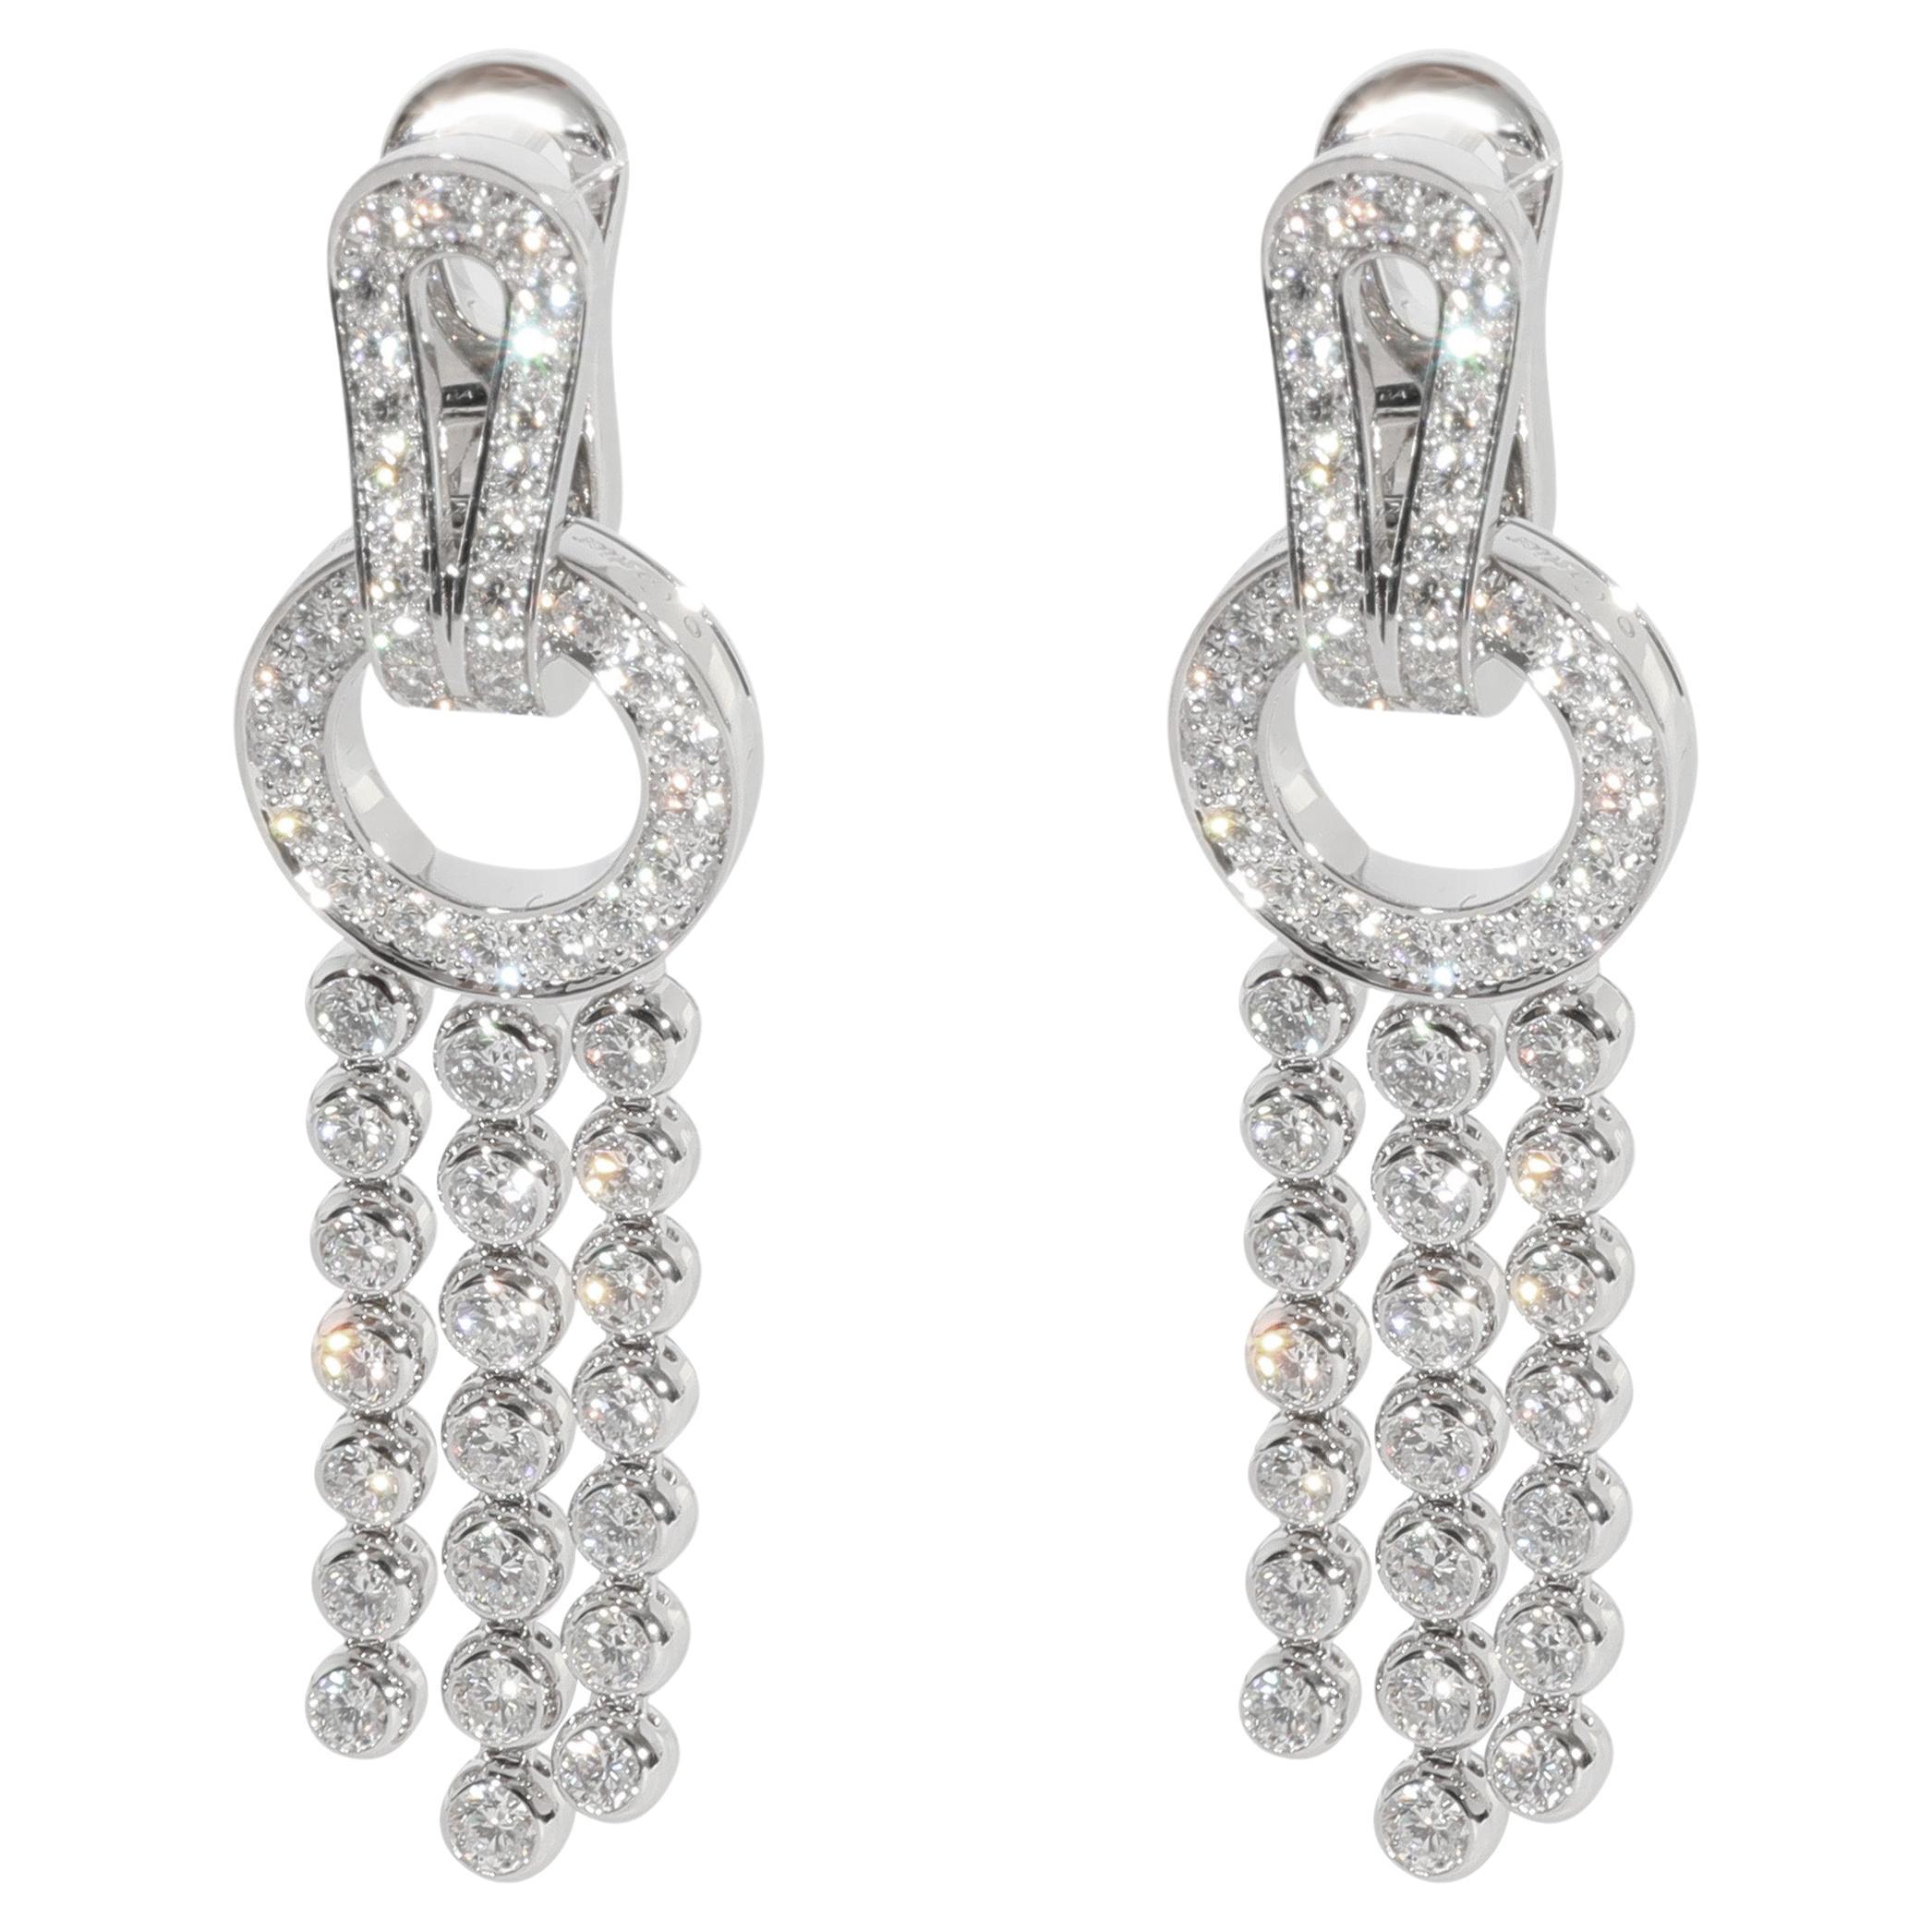 Cartier Agrafe Diamond Earring in 18k White Gold 3.31 CTW